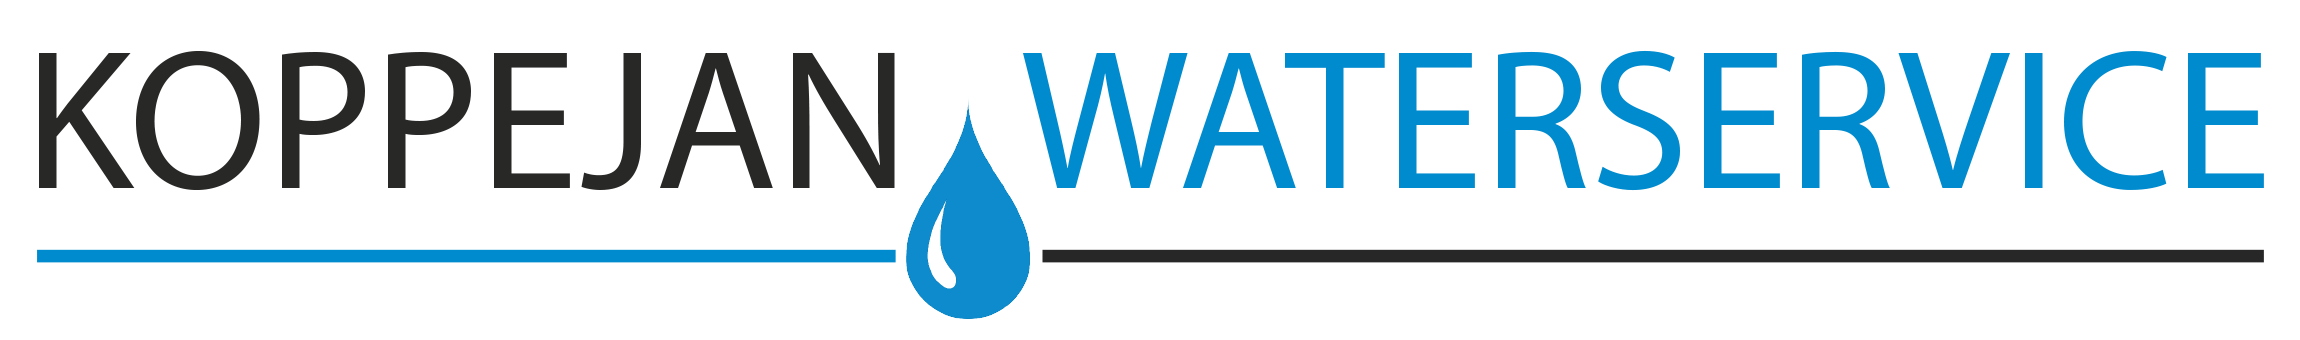 waterontharder zout bestellen| Koppejan Waterservice